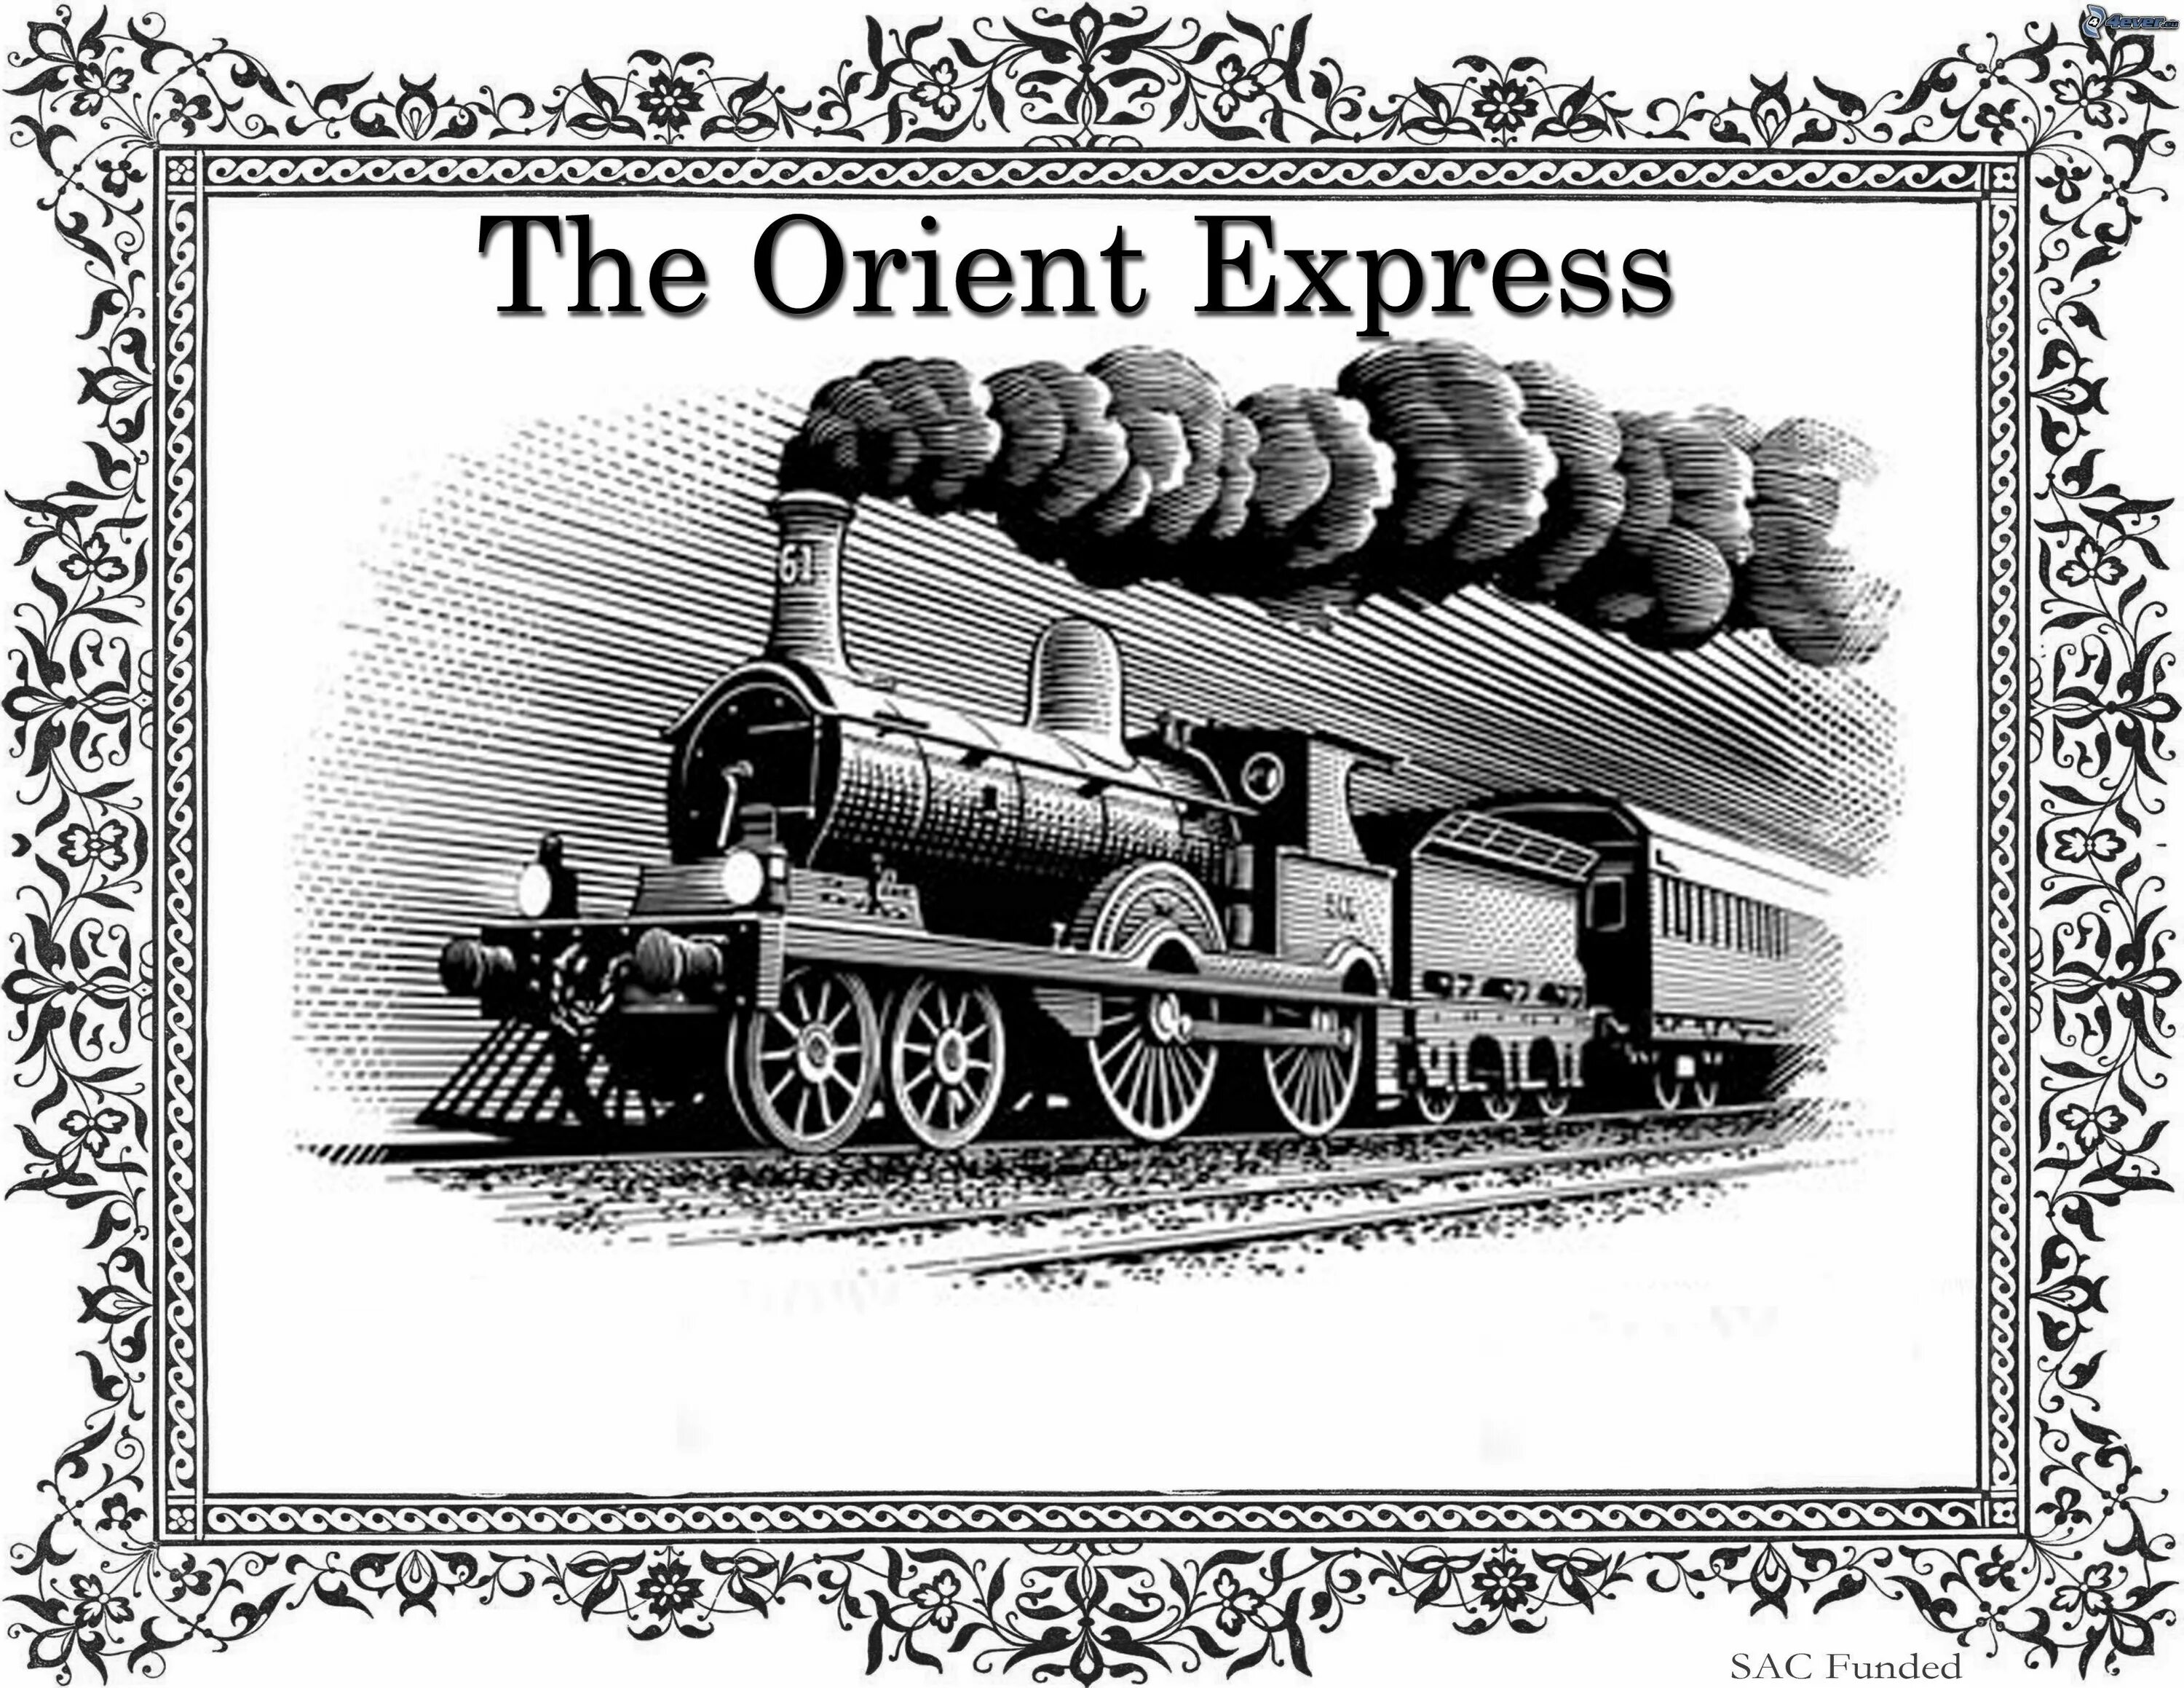 Ооо восточный экспресс. Восточный экспресс паровоз 19 век. Восточный экспресс иллюстрации. Orient Express Train иллюстрация. Восточный экспресс открытка.